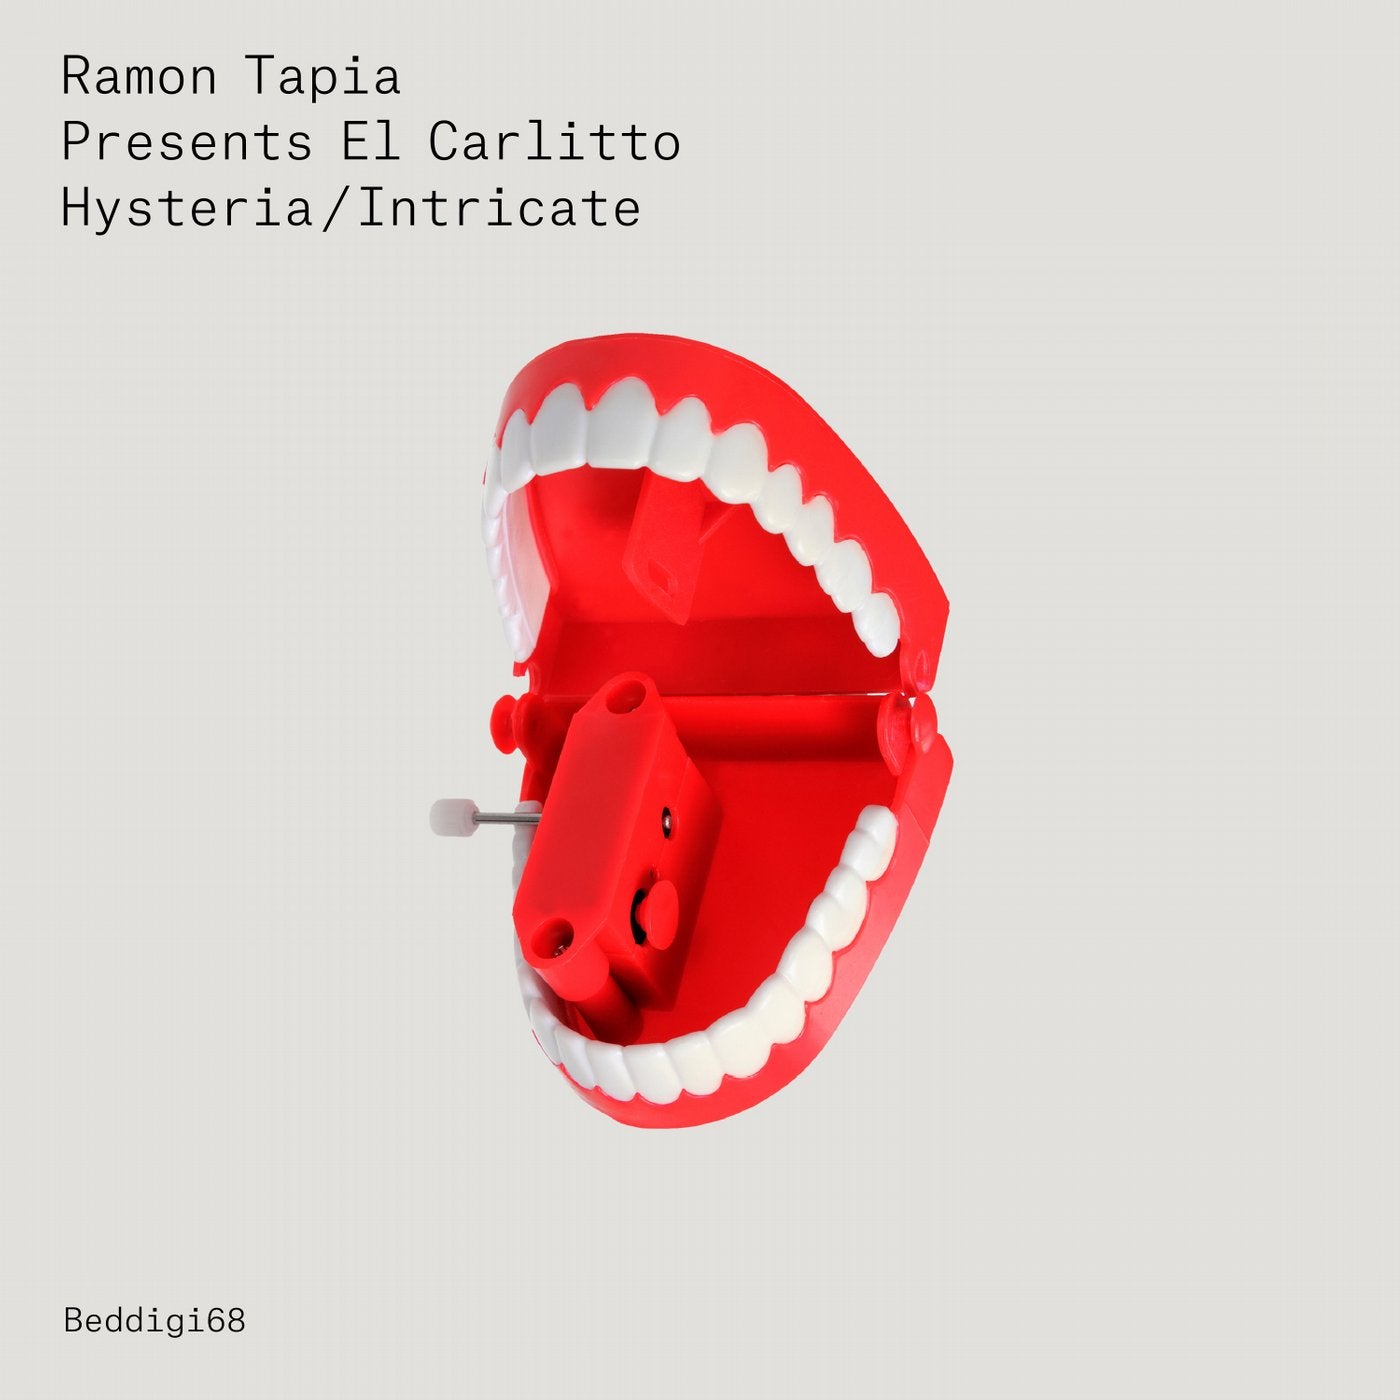 Ramon Tapia Presents El Carlitto - Hysteria / Intricate